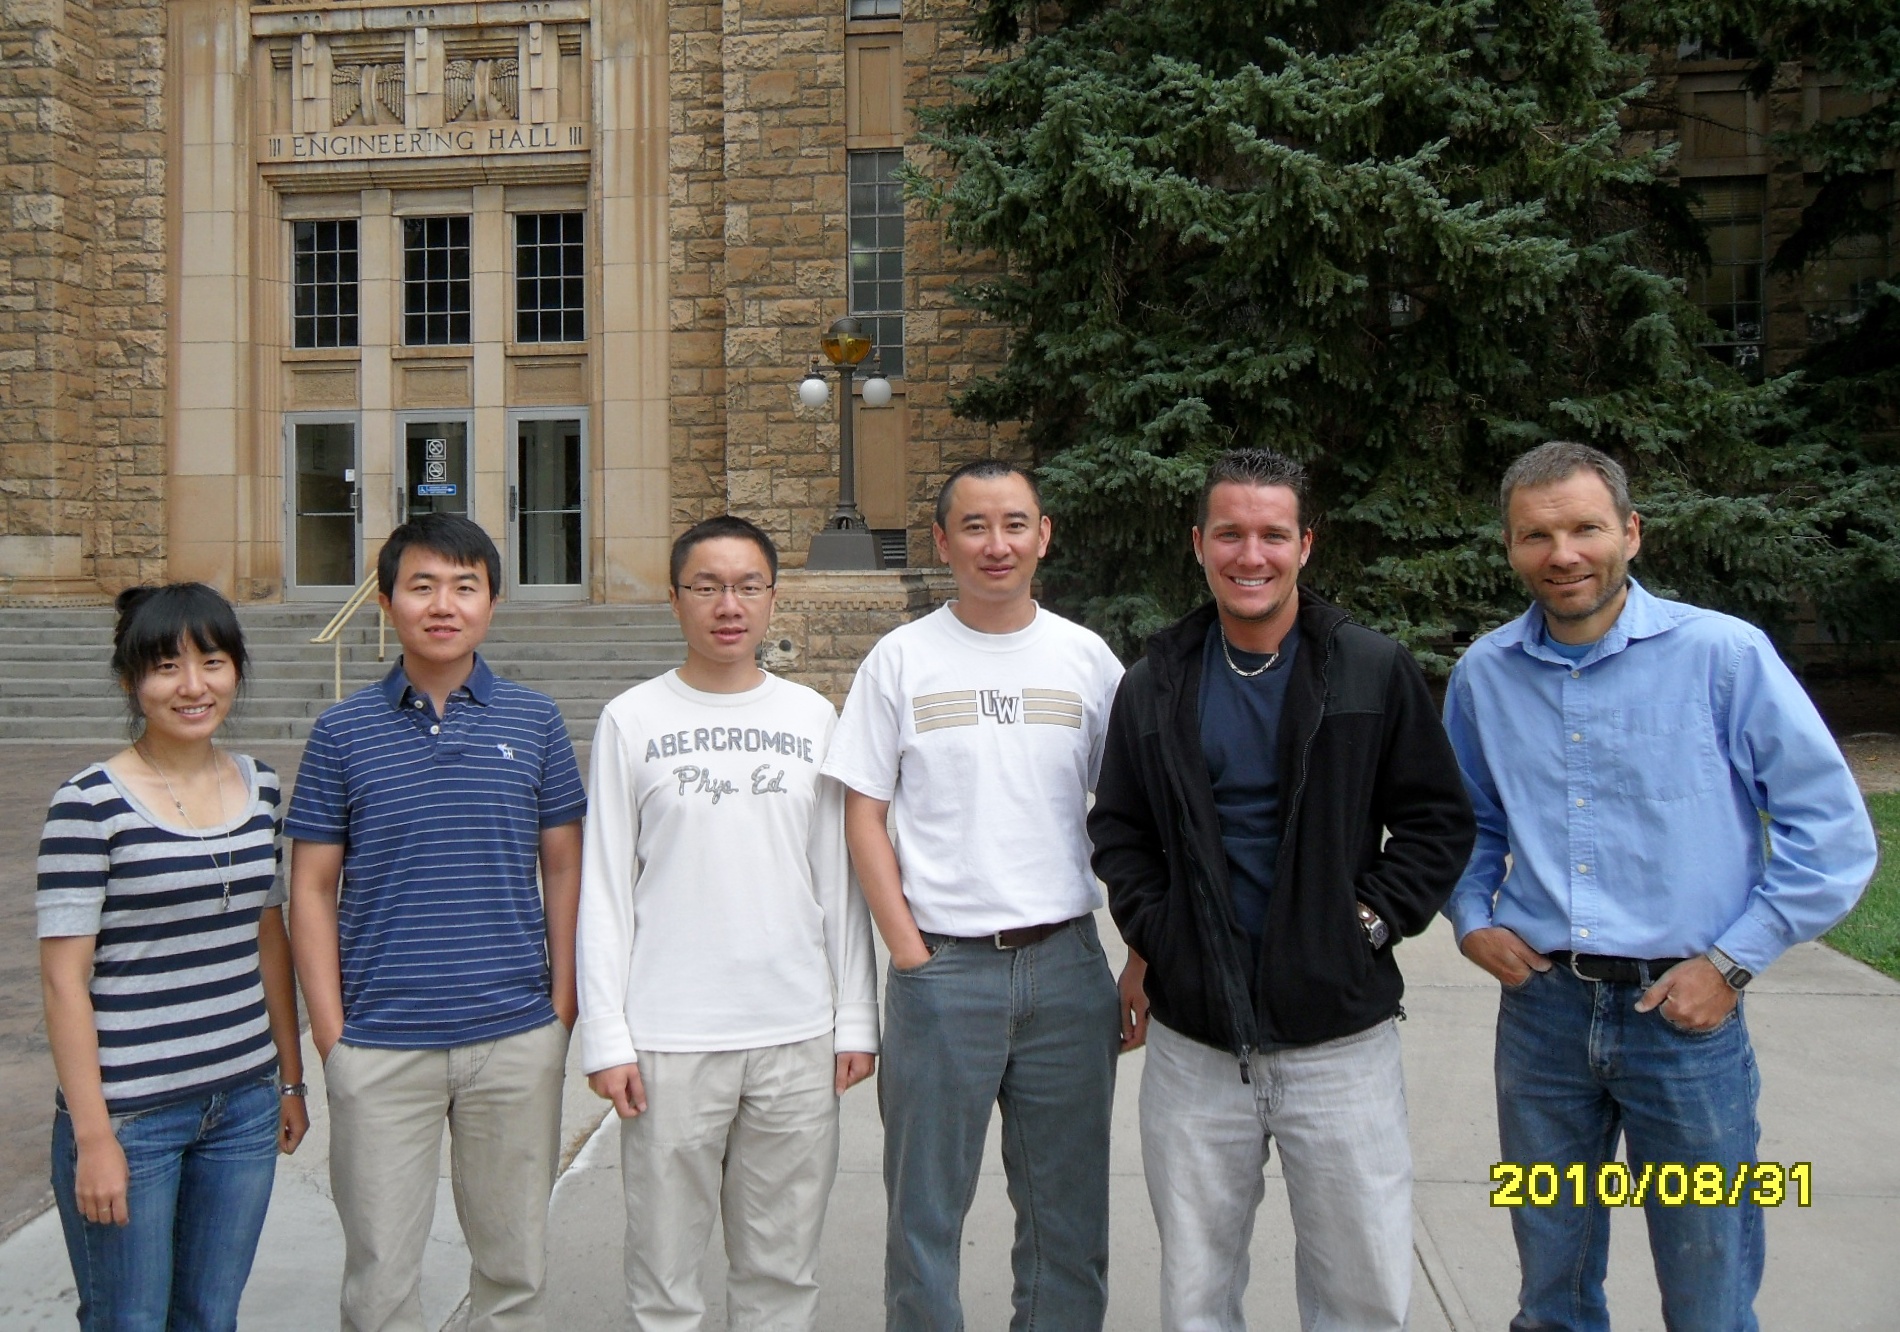 from left to right: Yang Yang, Yonggang Wang, Xin Zhou, Qun Miao, Ryan Peterman, and Bart Geerts